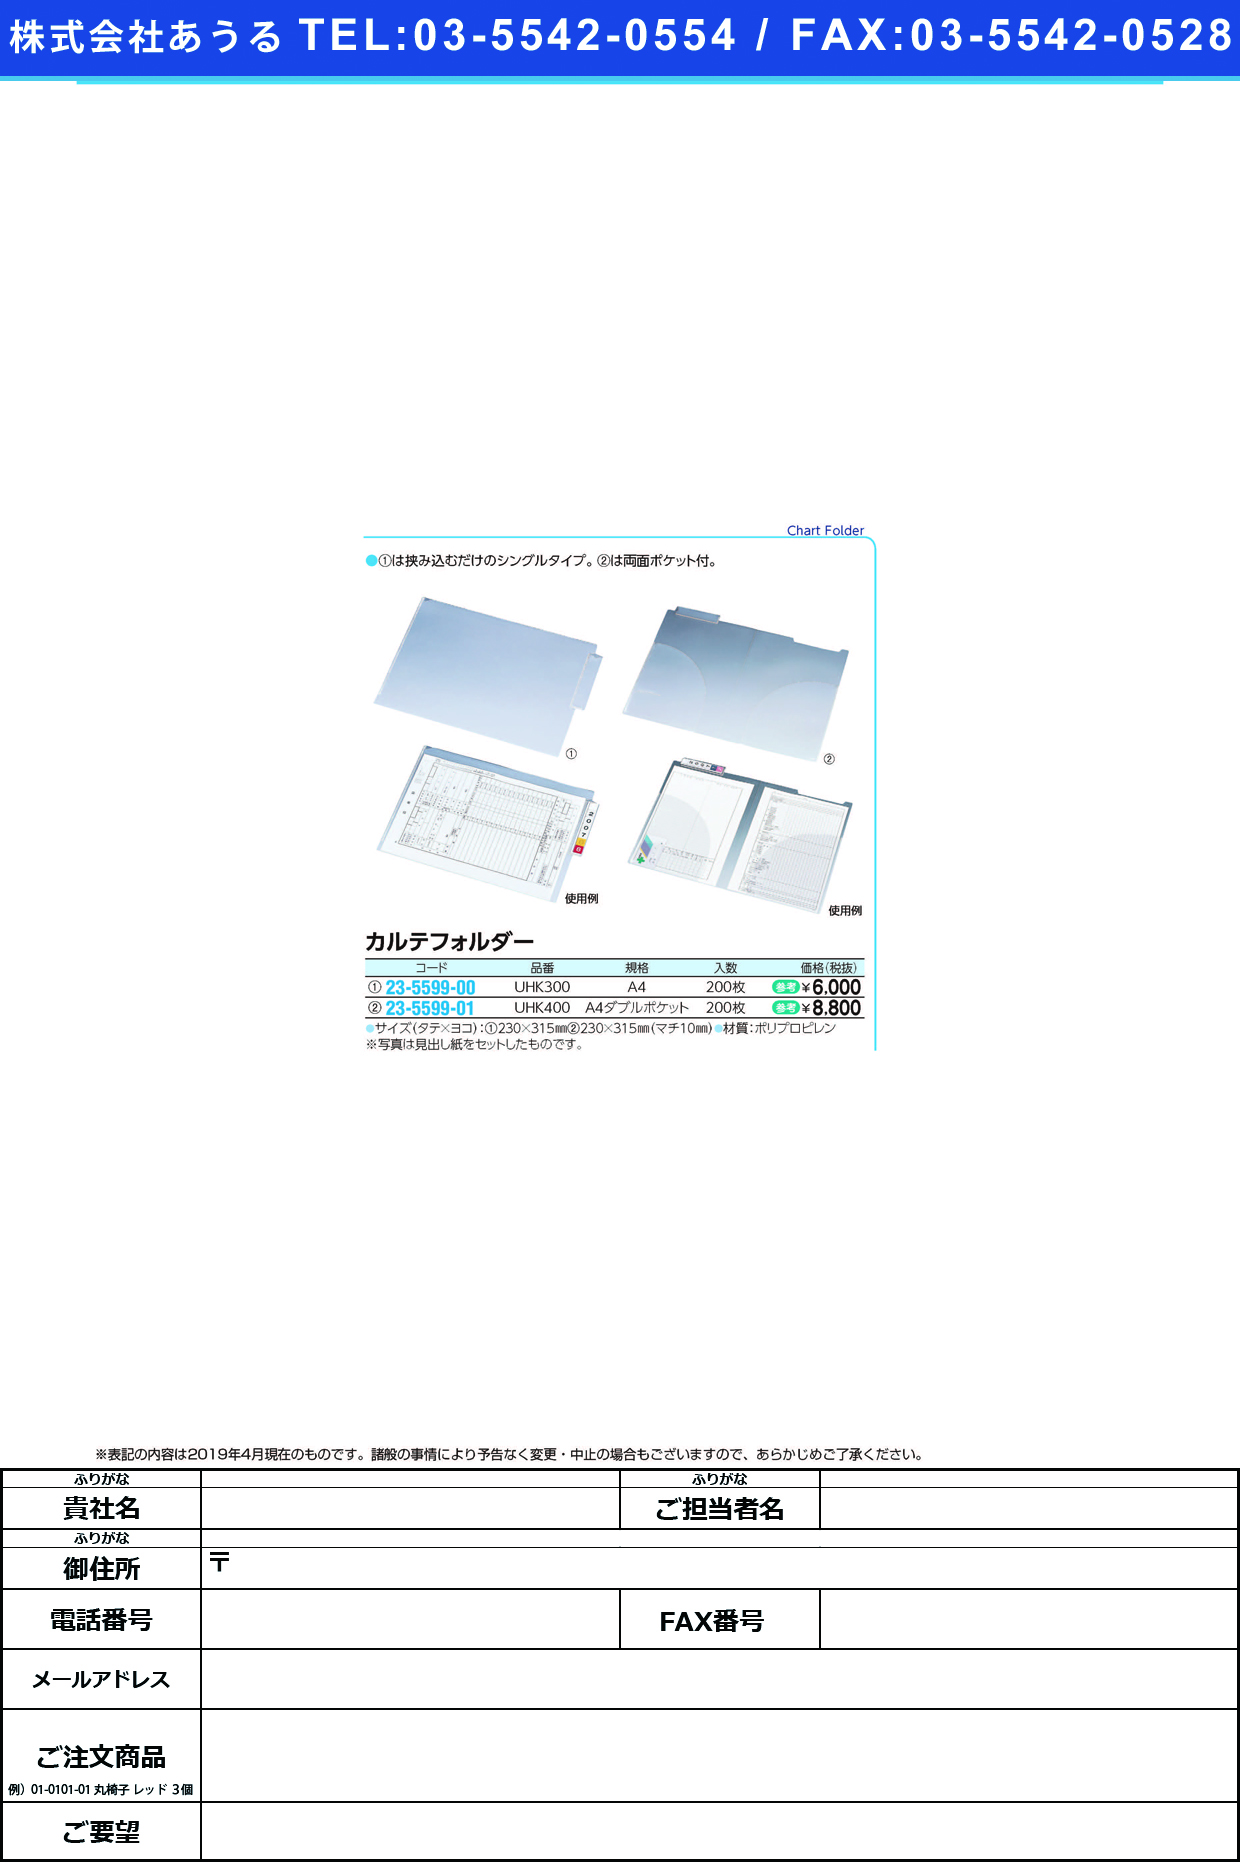 (23-5599-01)カルテフォルダー UHK400(200ﾏｲｲﾘ)ﾀﾞﾌﾞﾙ ｶﾙﾃﾌｫﾙﾀﾞｰ【1箱単位】【2019年カタログ商品】